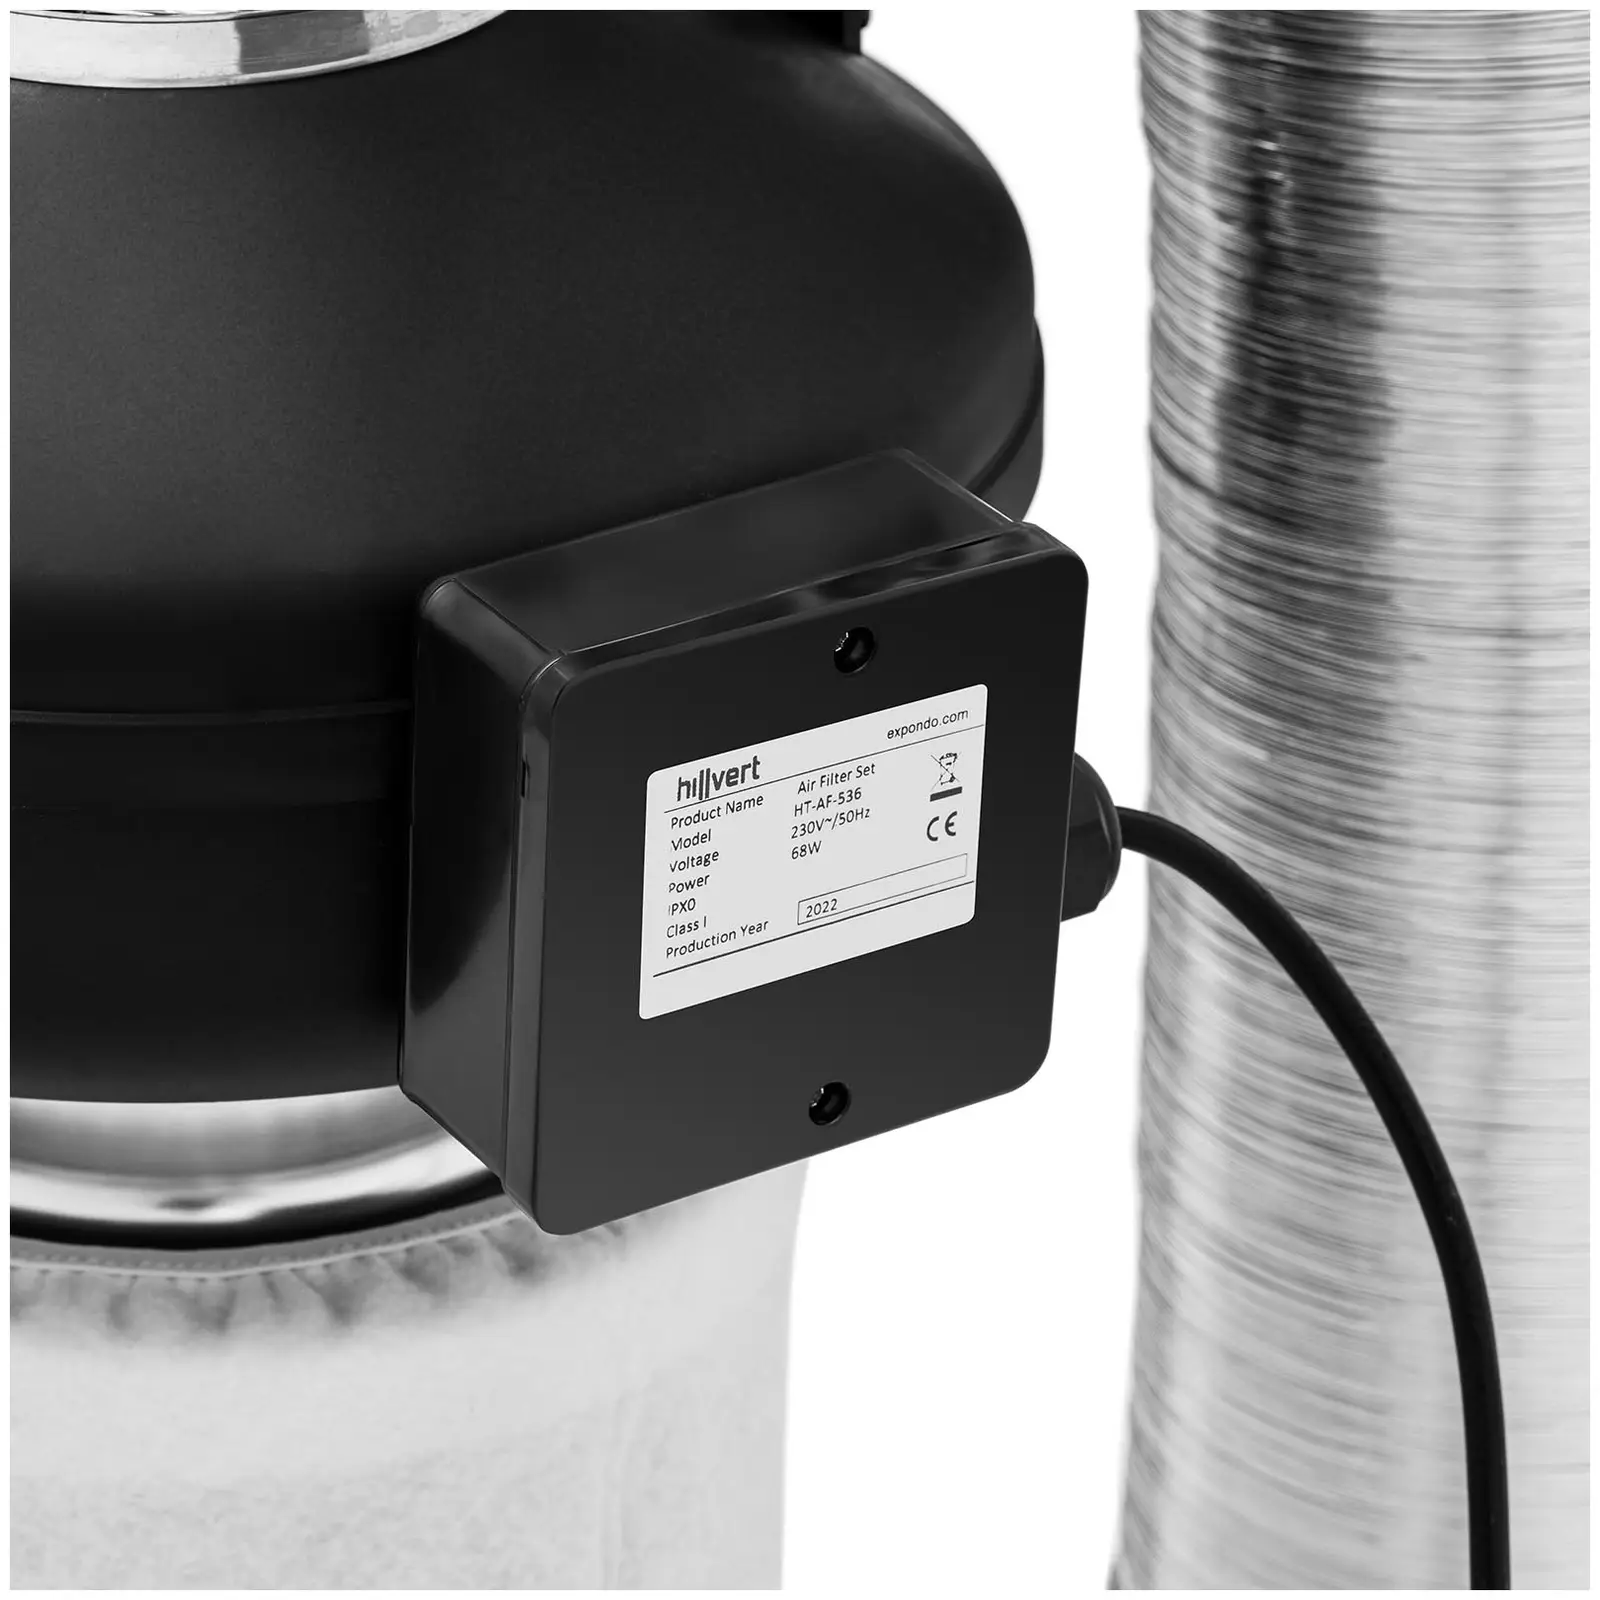 Sada pro odsávání vzduchu - filtr s aktivním uhlím / potrubní ventilátor / hadice pro odsávání vzduchu - Ø 130 mm výstupní otvor